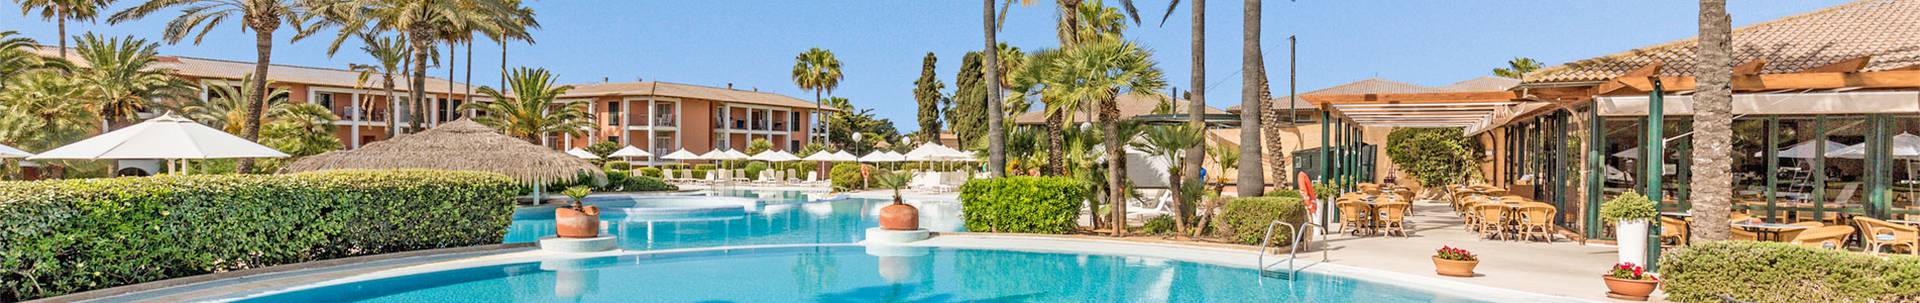 Blau hotels - Majorque - 